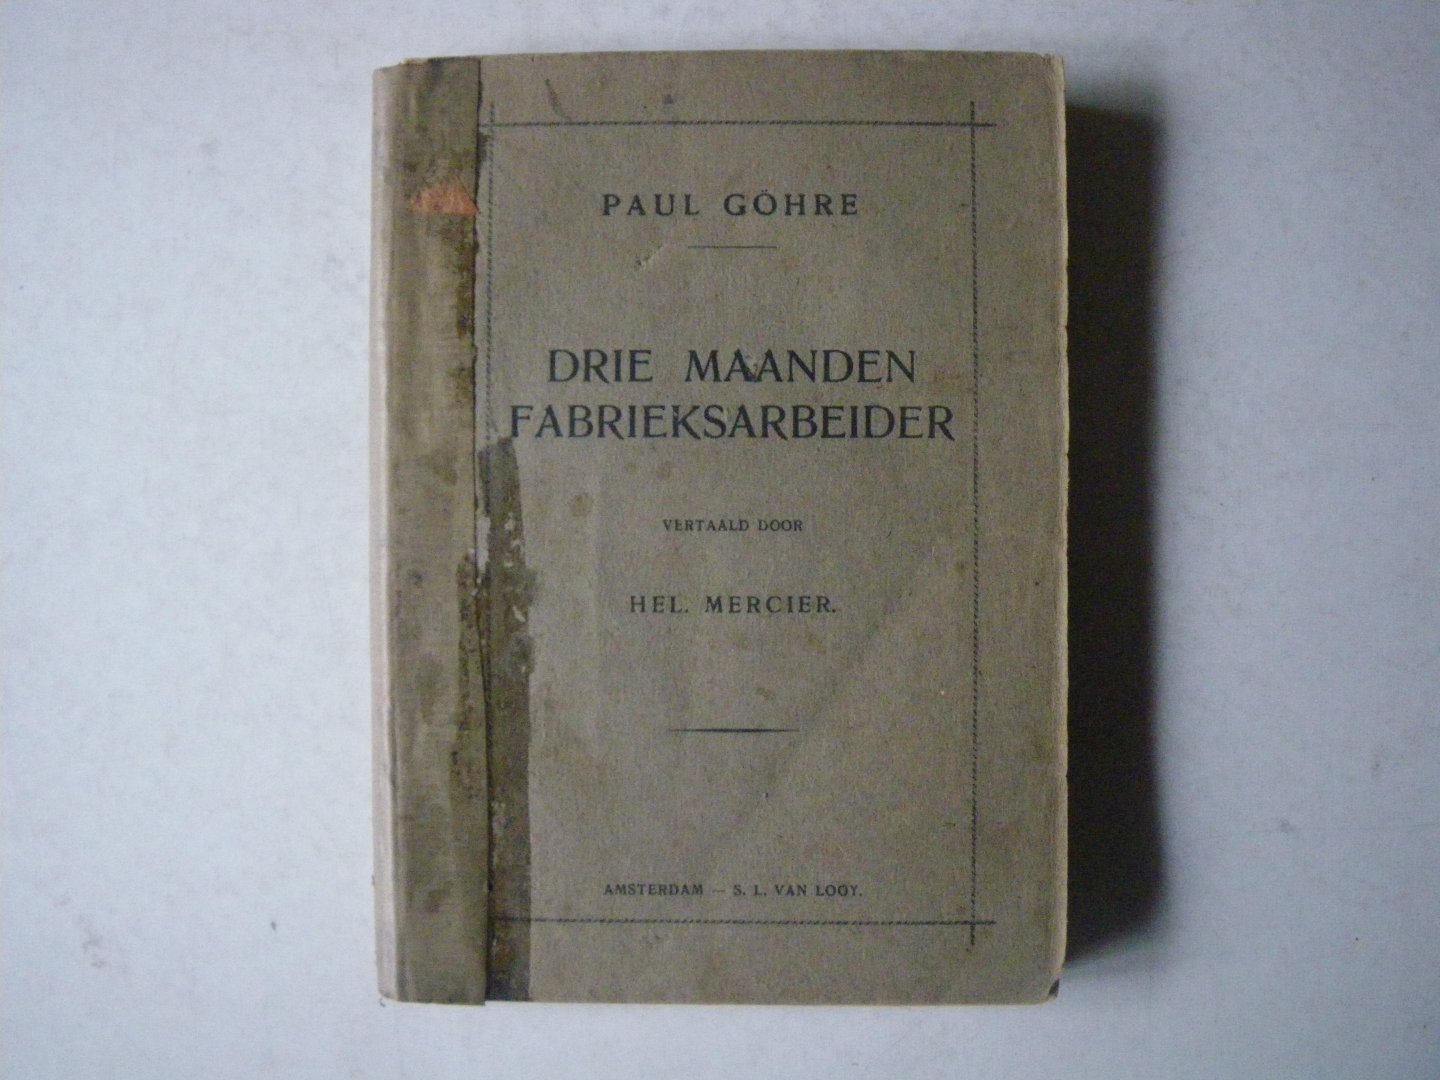 Göhre, Paul. vertaald Hel. Mercier - Drie maanden fabrieksarbeider : een praktische studie